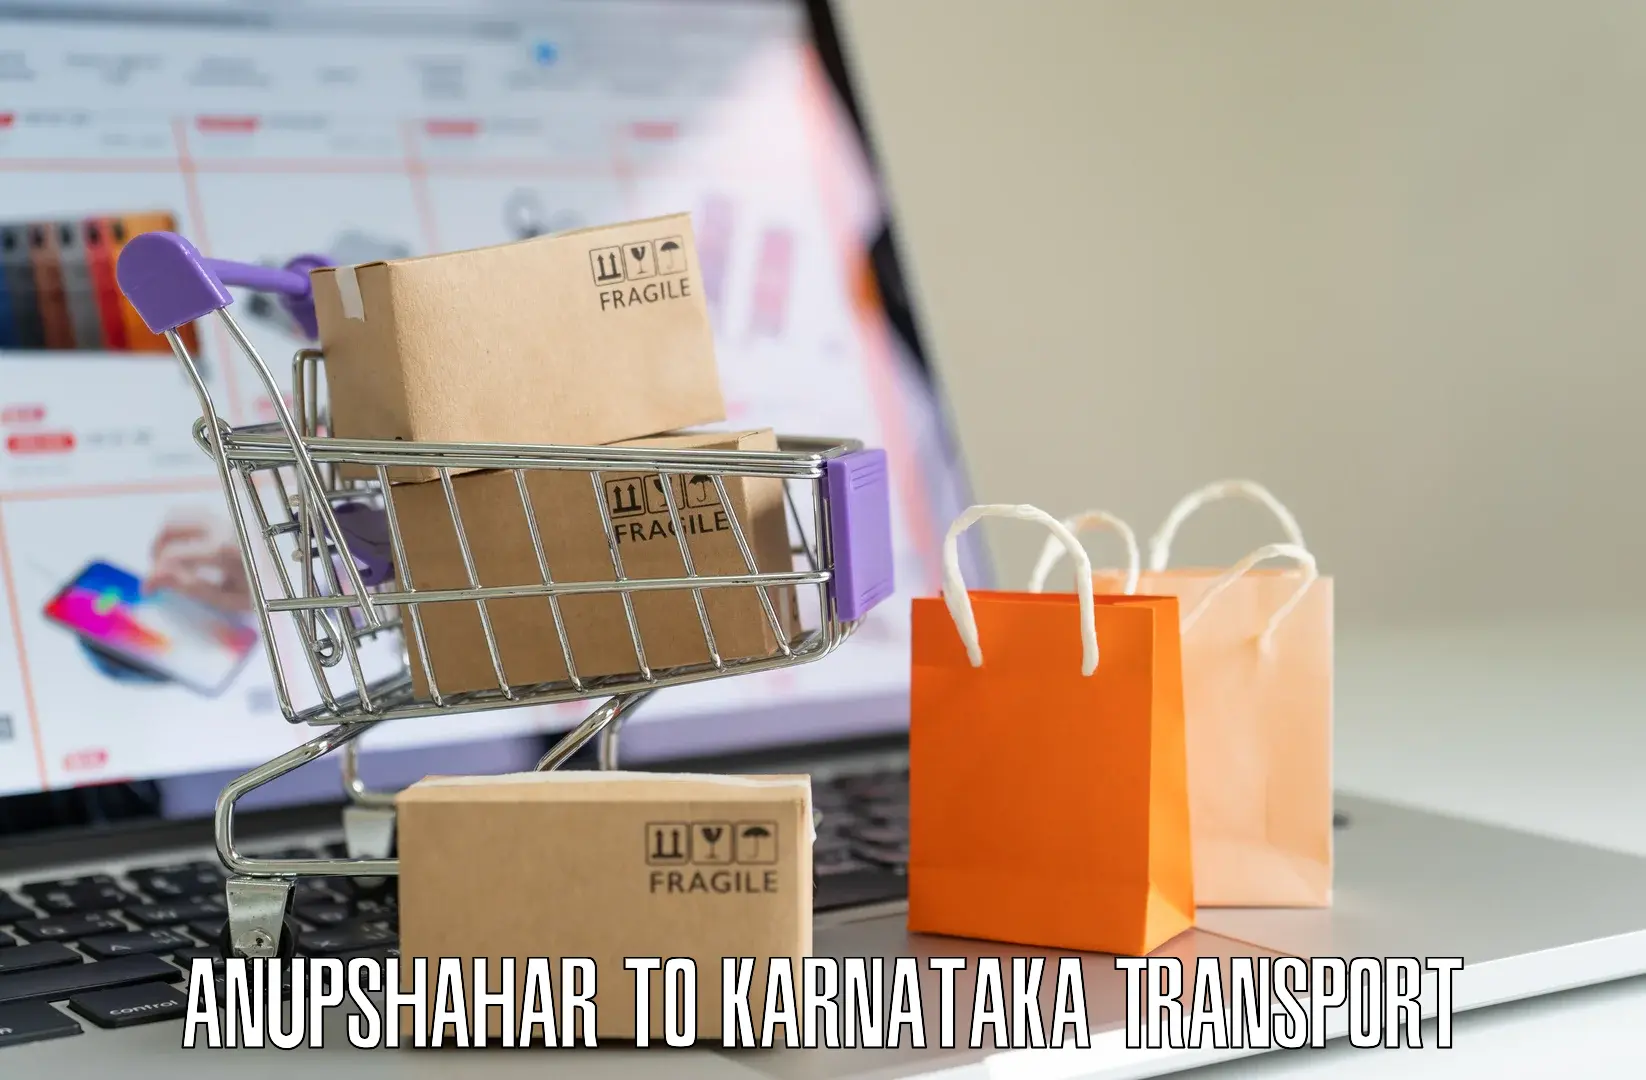 Interstate transport services in Anupshahar to Kanjarakatte